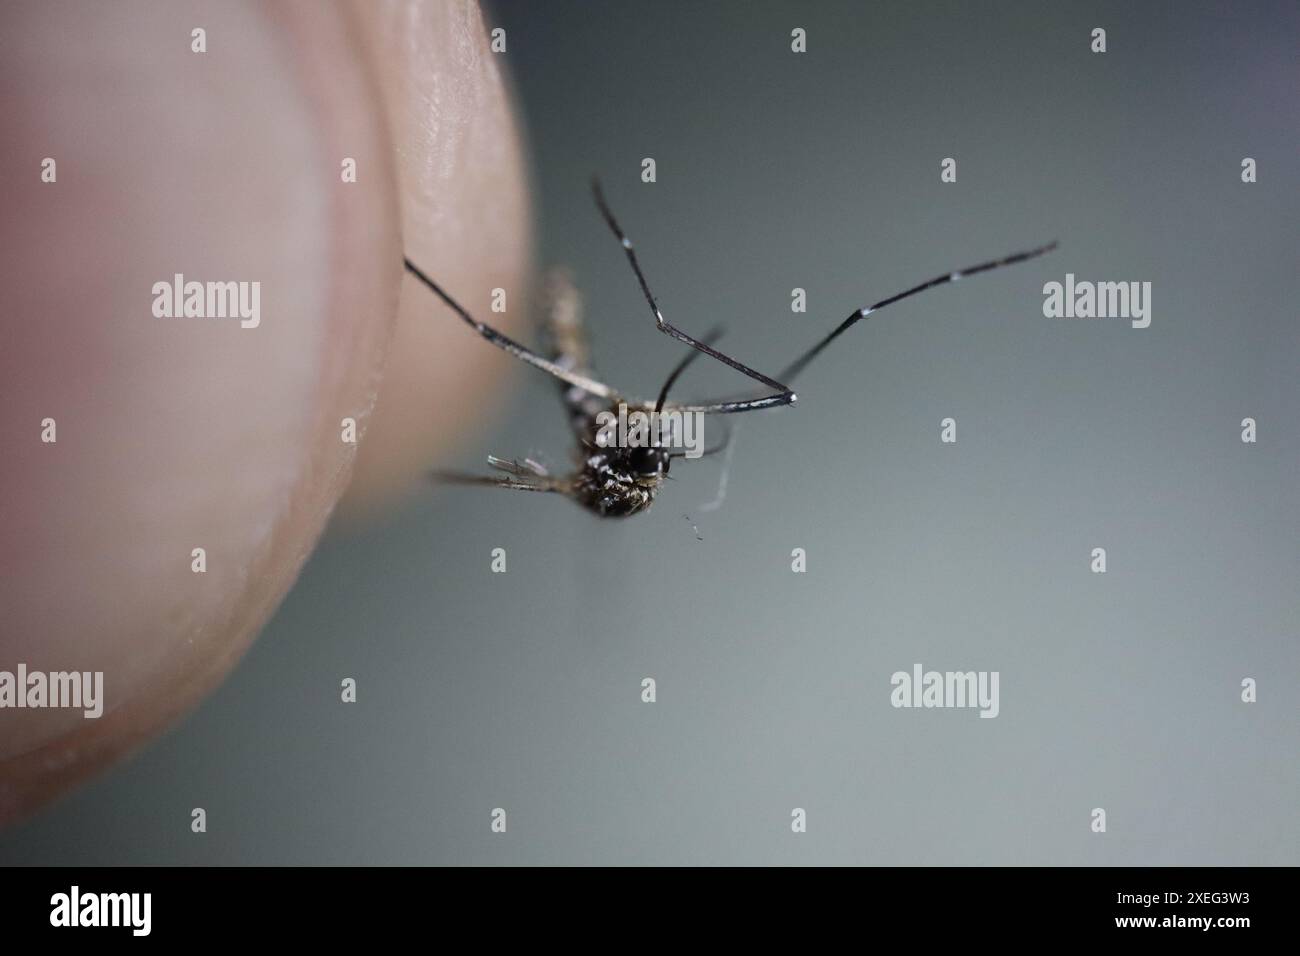 Nahaufnahme der verstorbenen aedes Dengue-Mücke, die zwischen den Fingern auf grauem Hintergrund eingeklemmt wurde. Hochwertige Fotos. Dengue-Sender. Aedes. Stockfoto